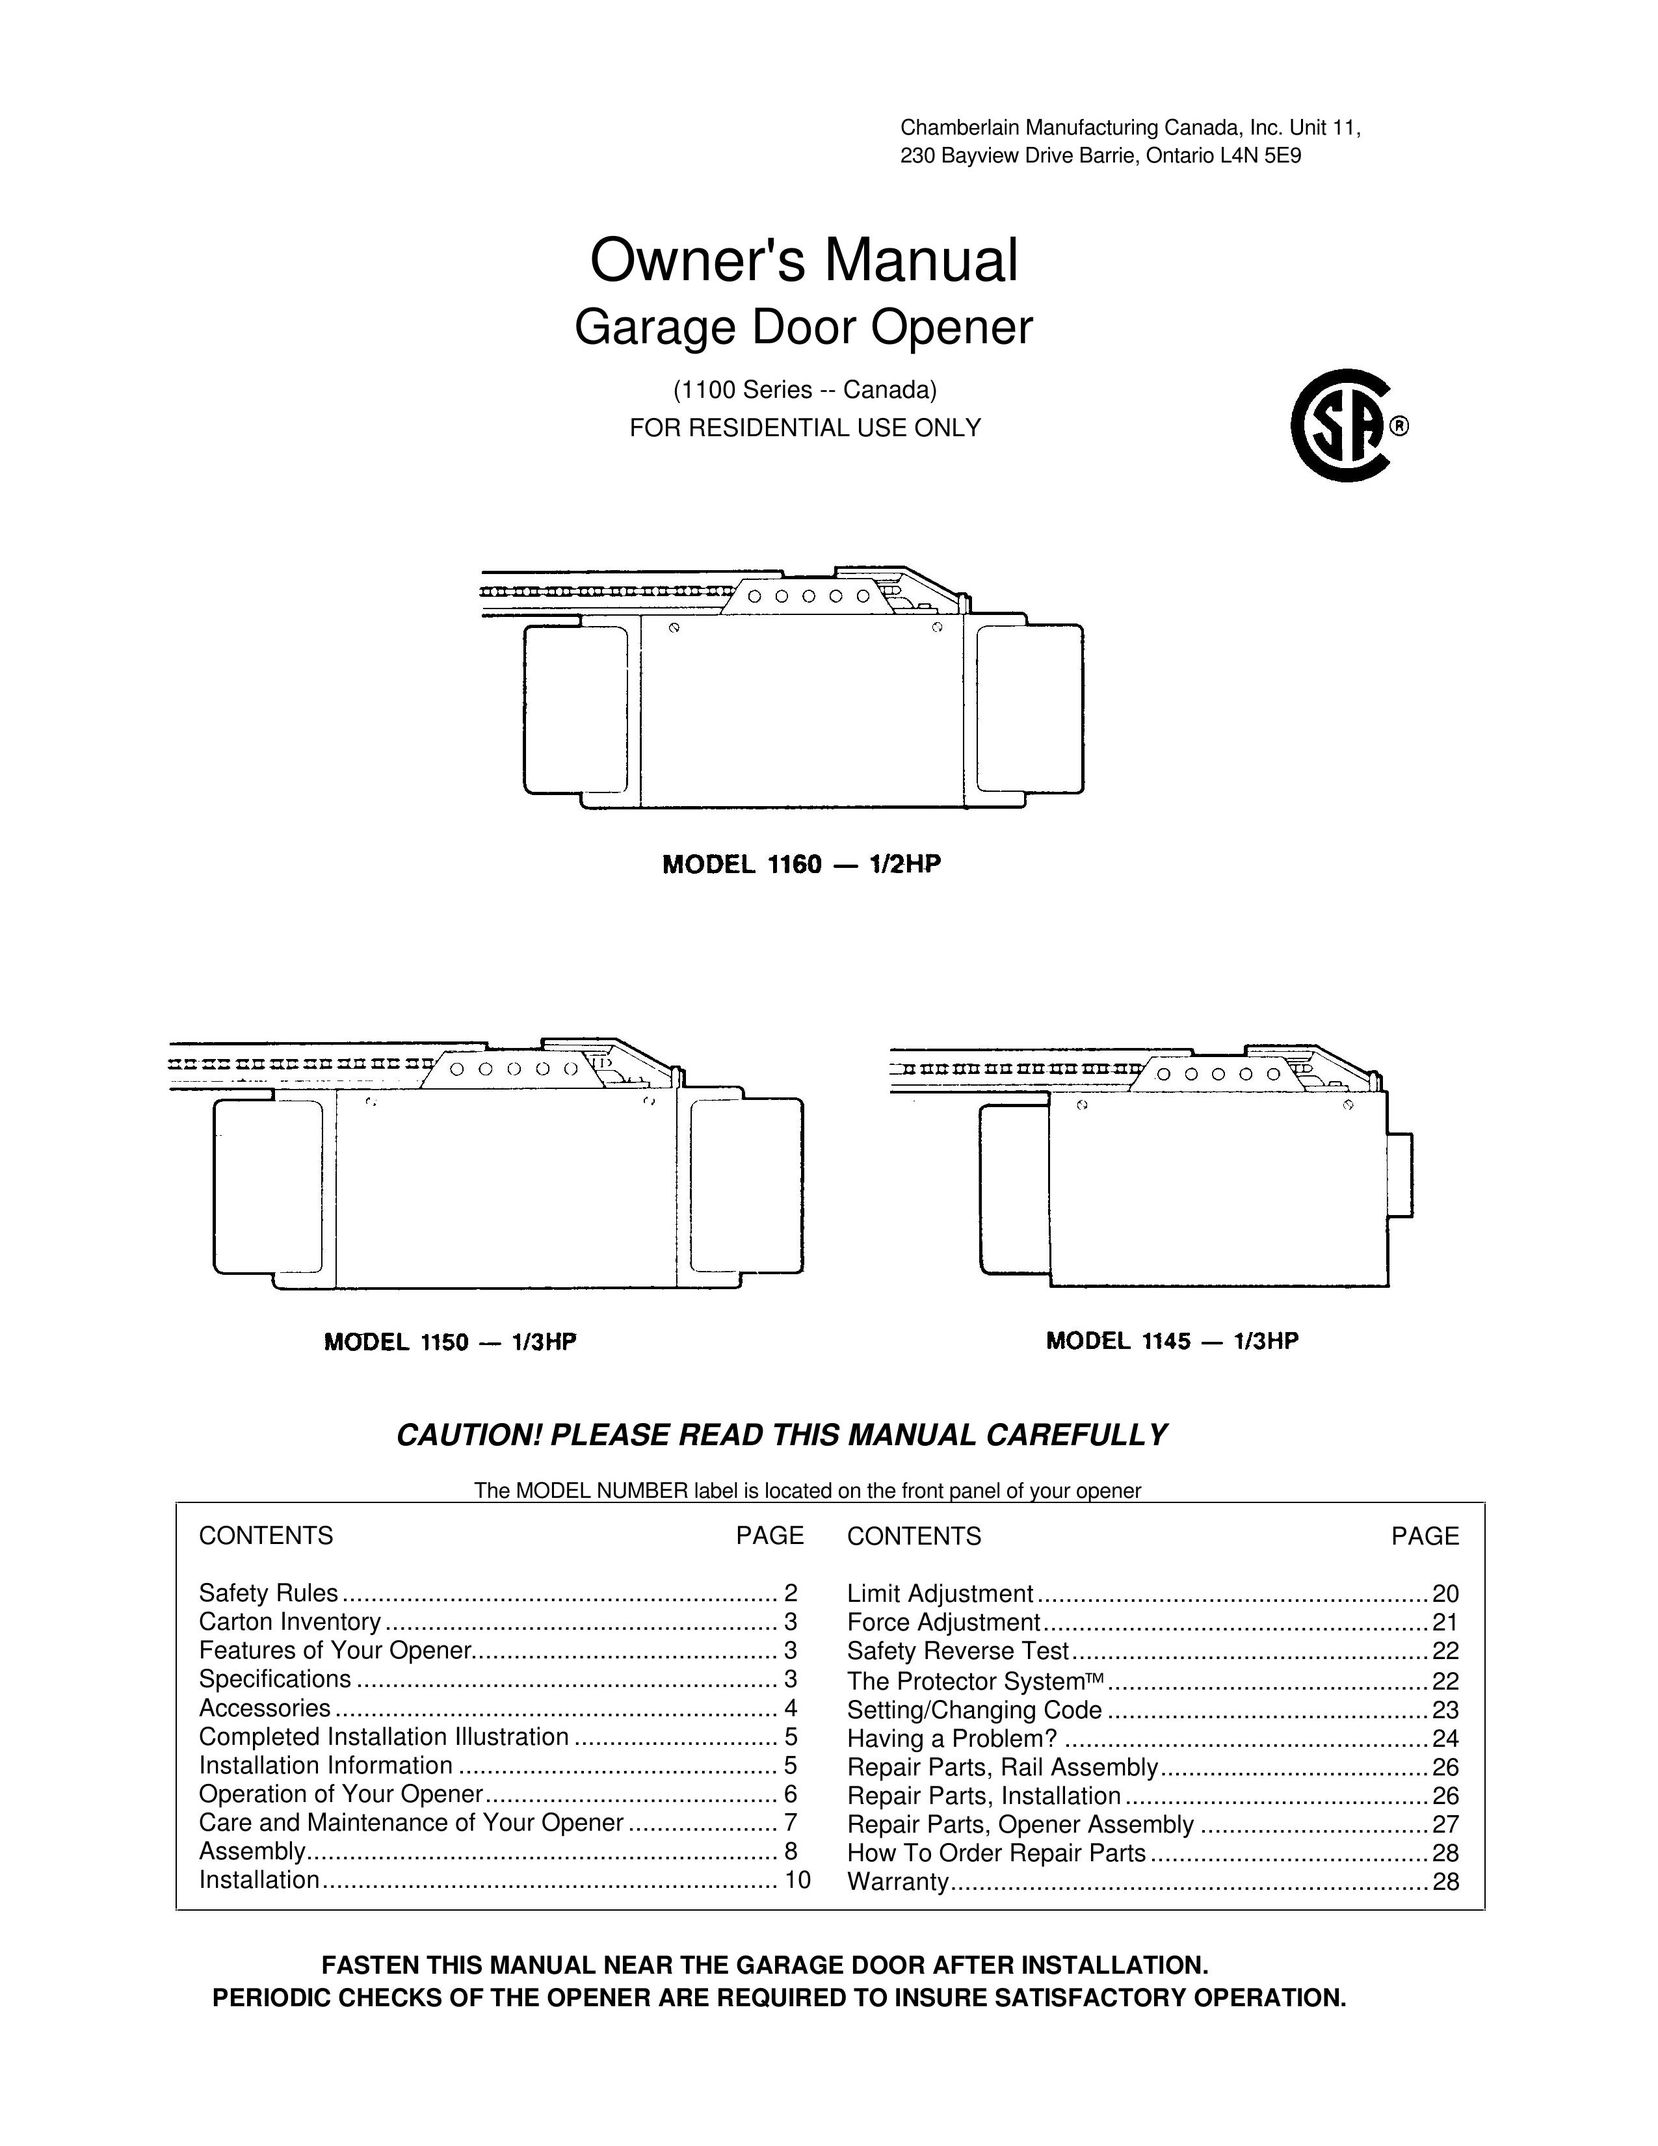 Chamberlain 1160-1/2HP Garage Door Opener User Manual